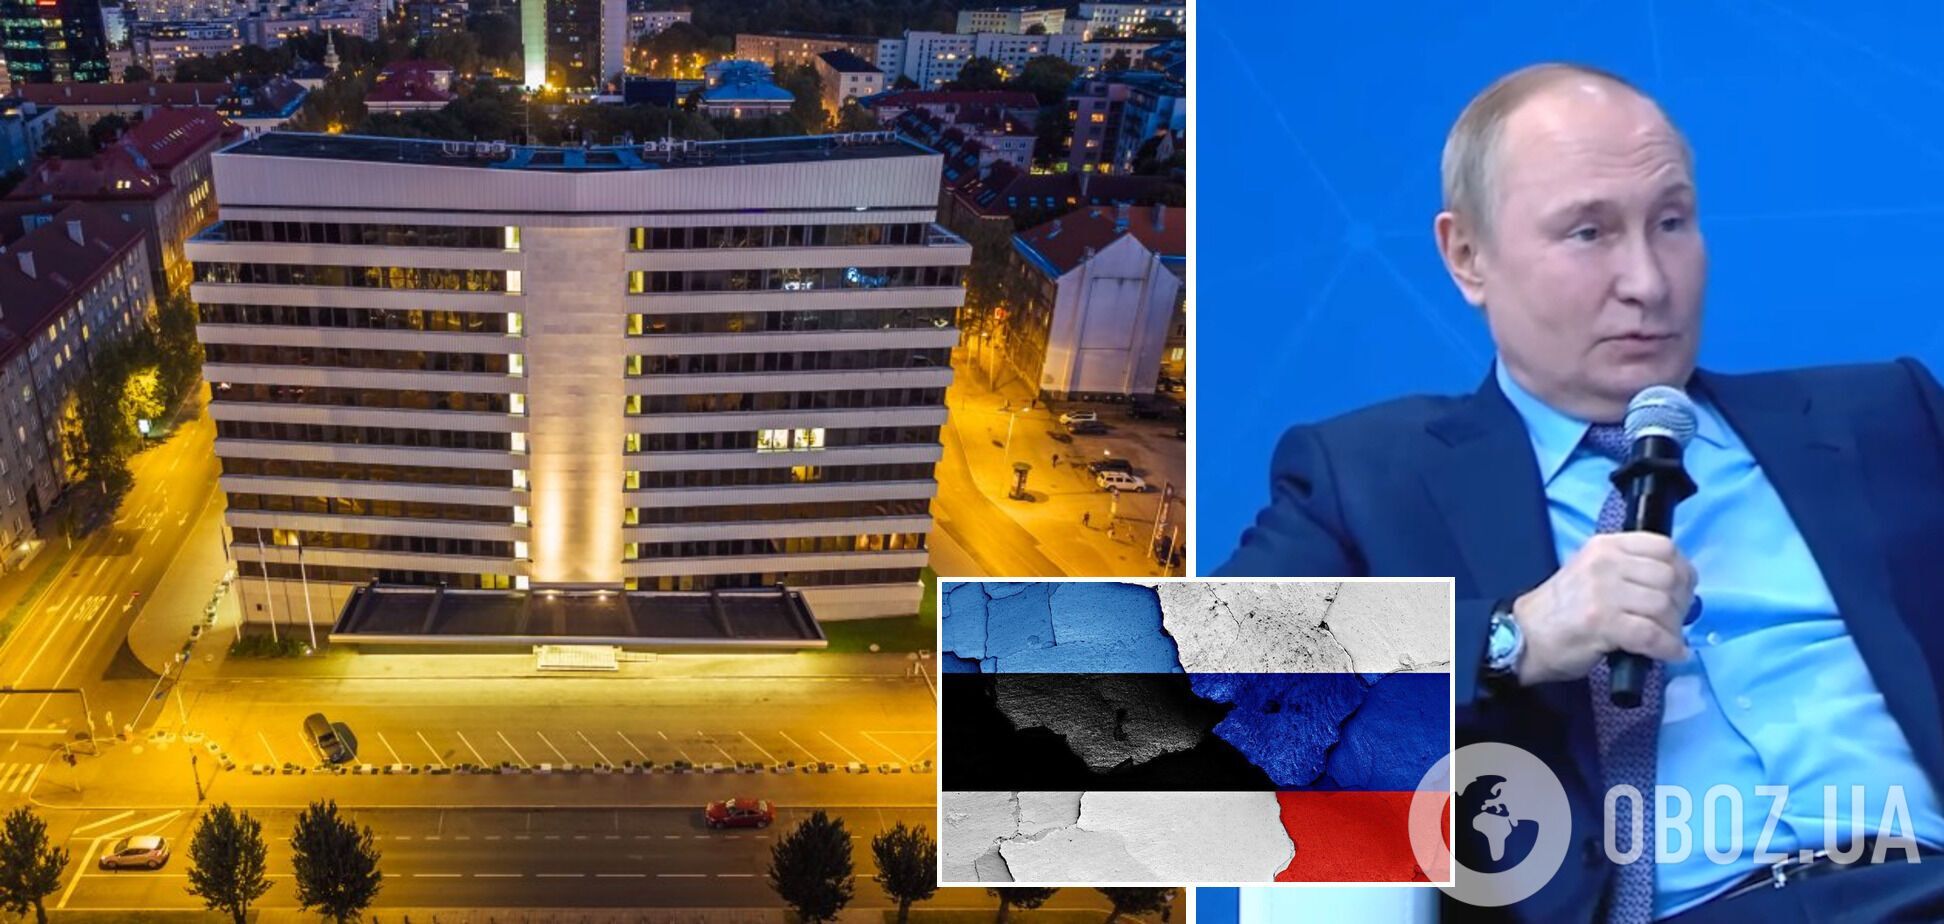 Посла РФ вызвали в МИД Эстонии из-за Путина, сравнившего себя с российским императором